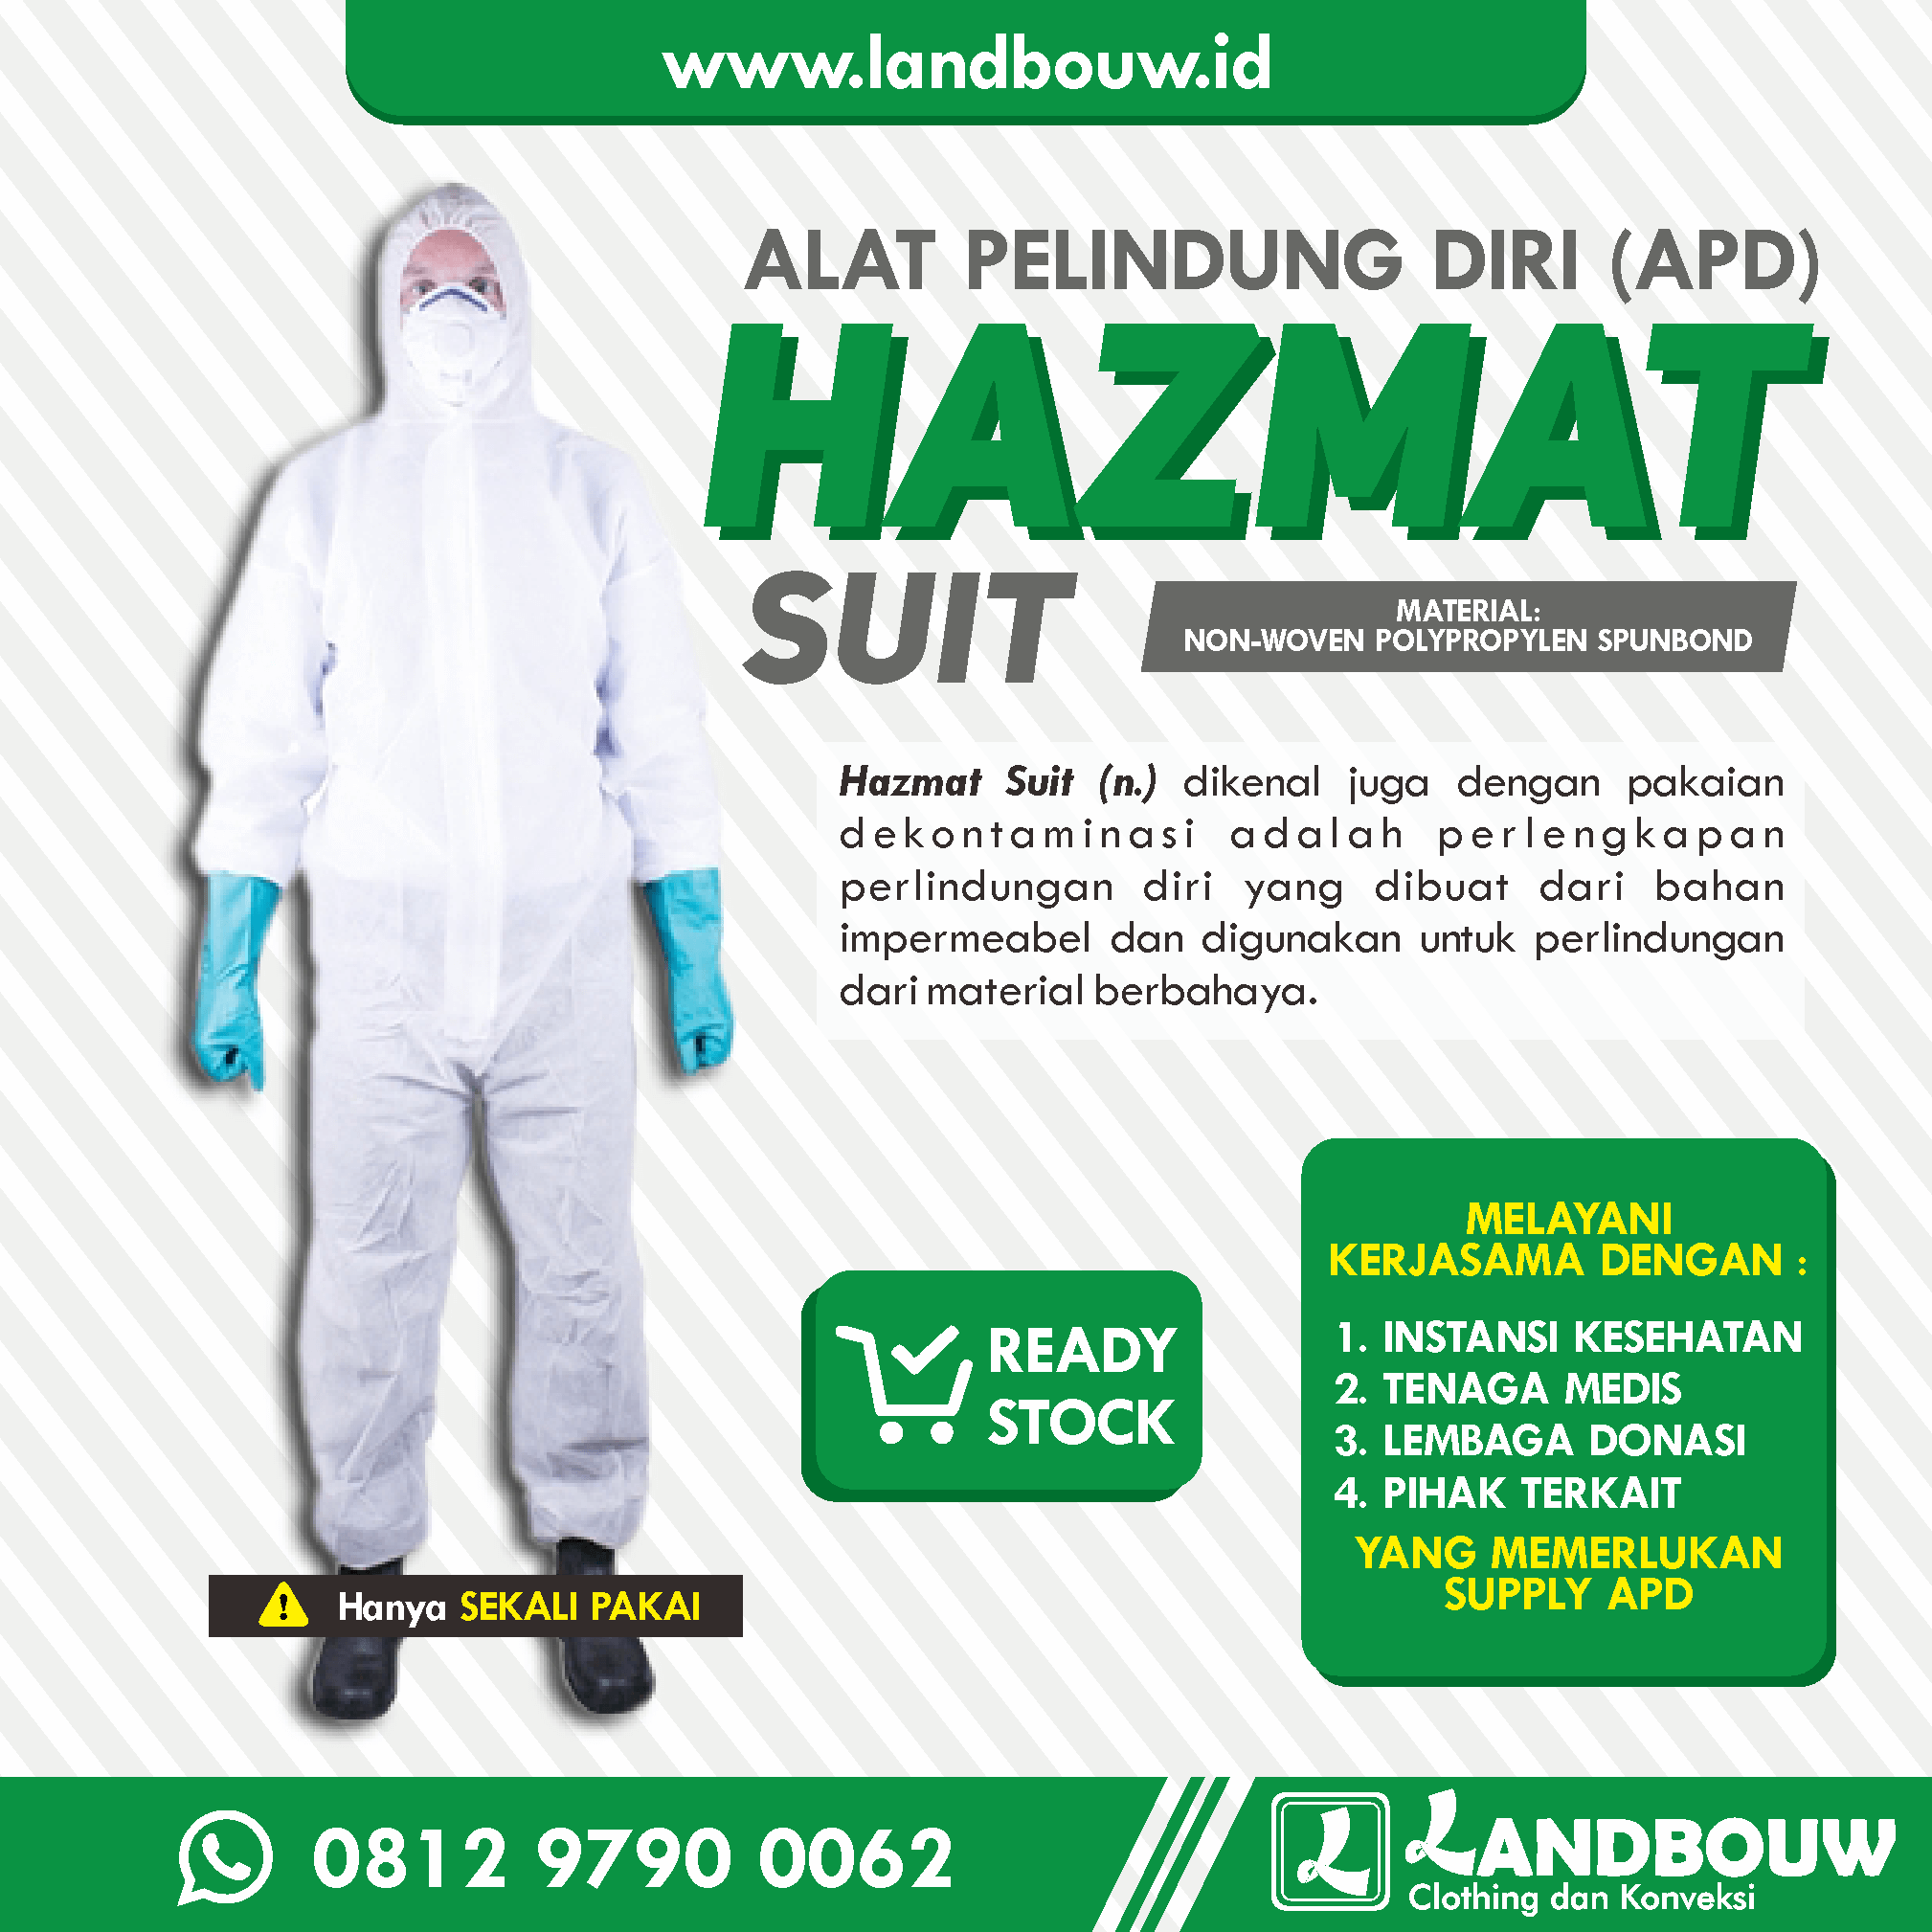 Konveksi Landbouw Supplier Hazmat Suit – Baju APD di Jawa